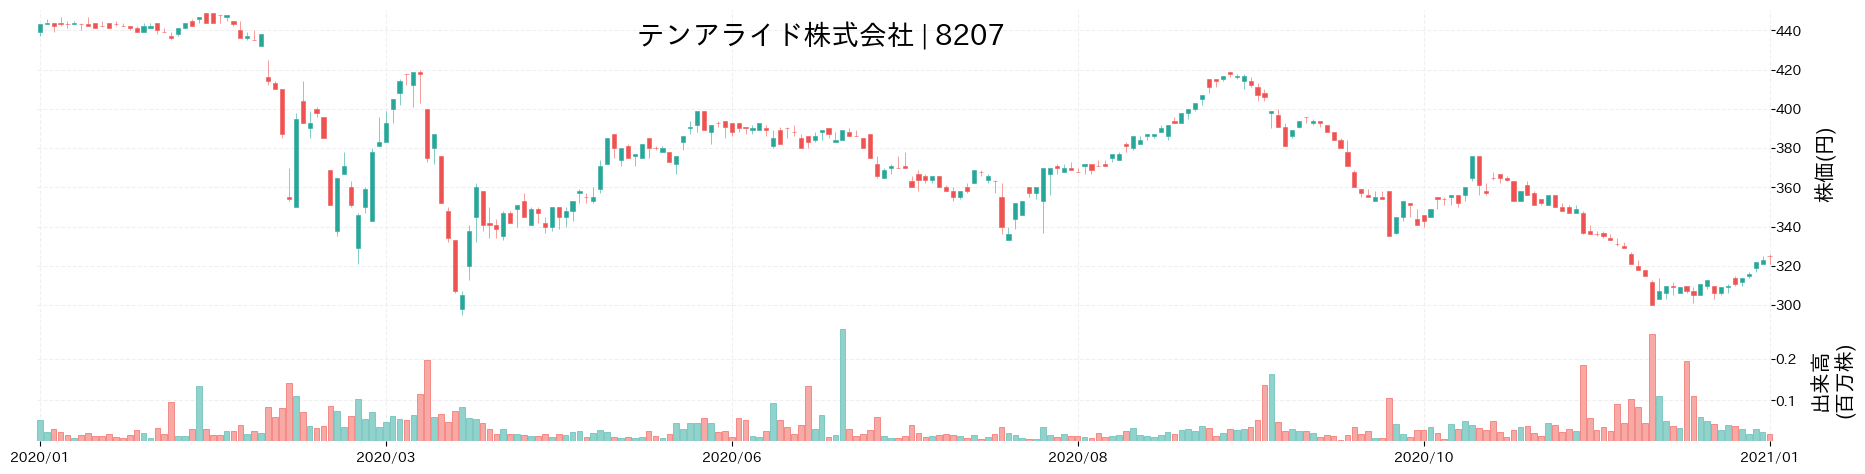 テンアライドの株価推移(2020)